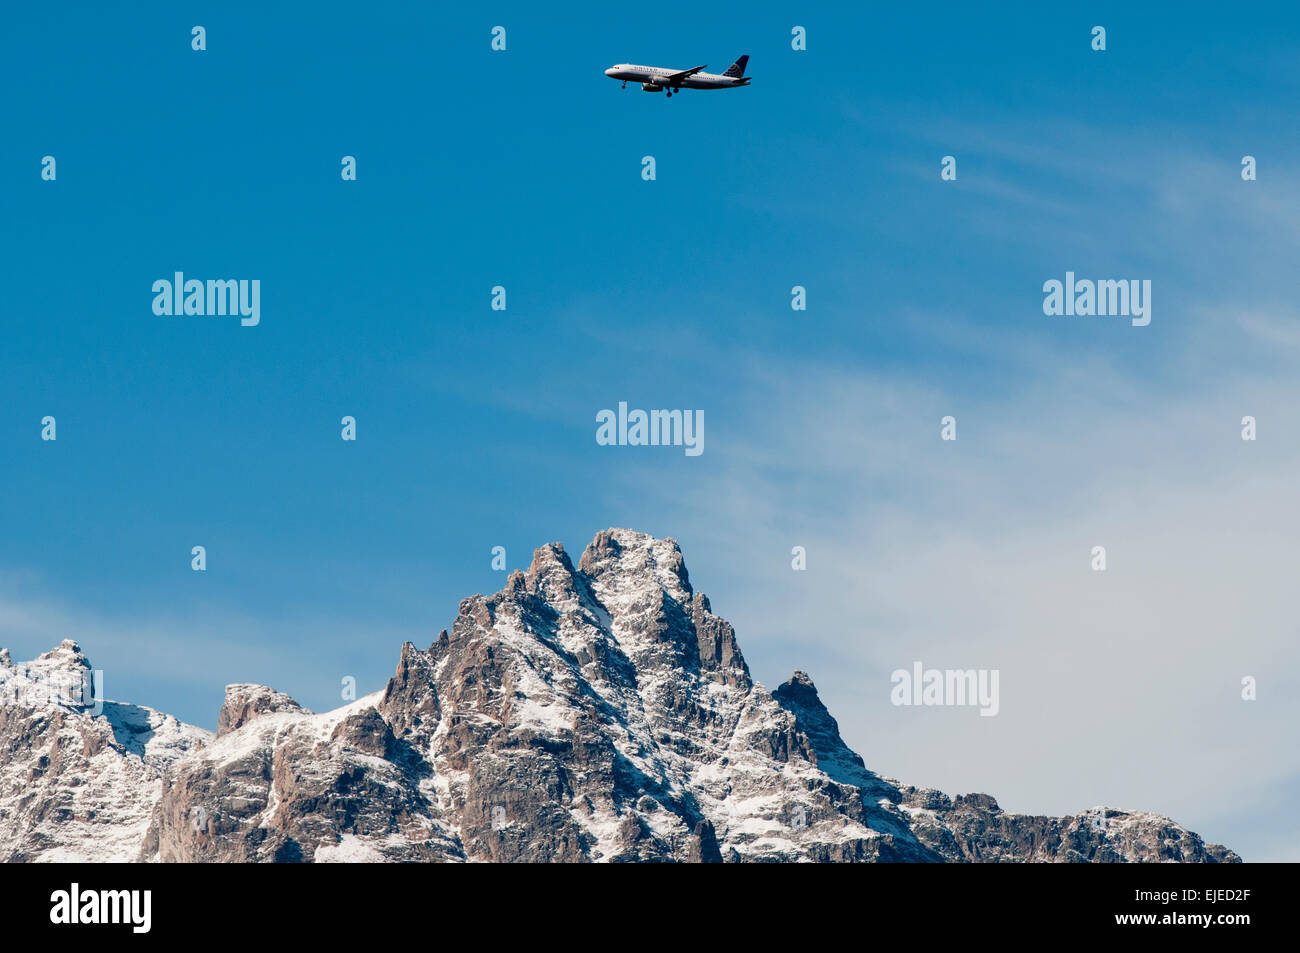 L'approche commerciale 737 Jackson airport survolant le Grand Teton Peak Banque D'Images